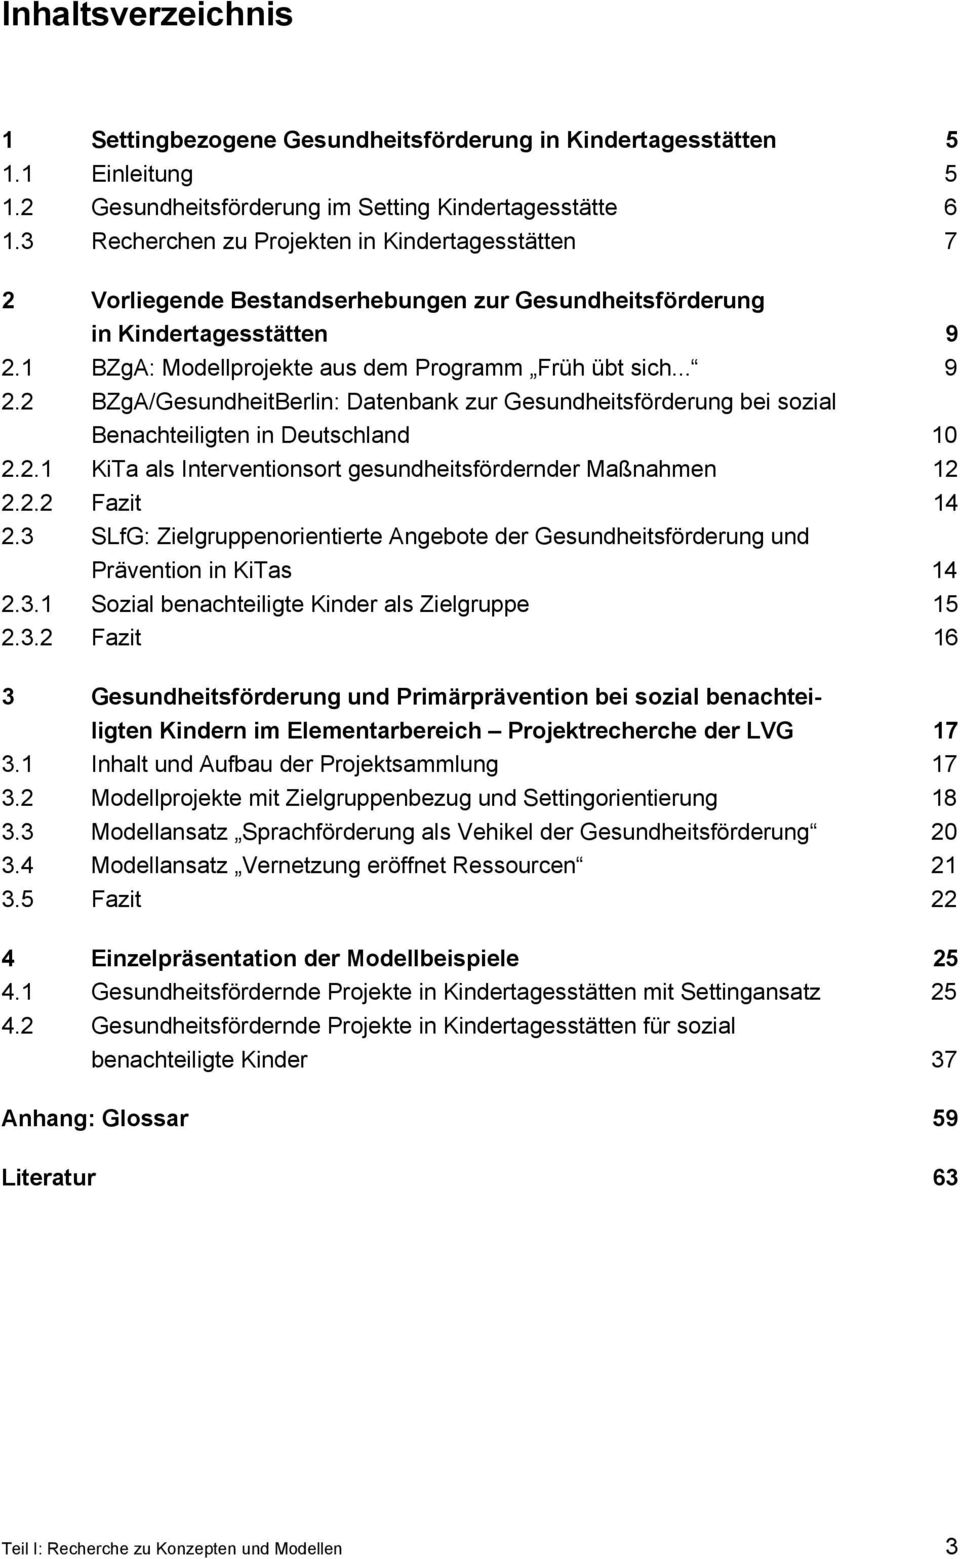 1 BZgA: Modellprojekte aus dem Programm Früh übt sich... 9 2.2 BZgA/GesundheitBerlin: Datenbank zur Gesundheitsförderung bei sozial Benachteiligten in Deutschland 10 2.2.1 KiTa als Interventionsort gesundheitsfördernder Maßnahmen 12 2.